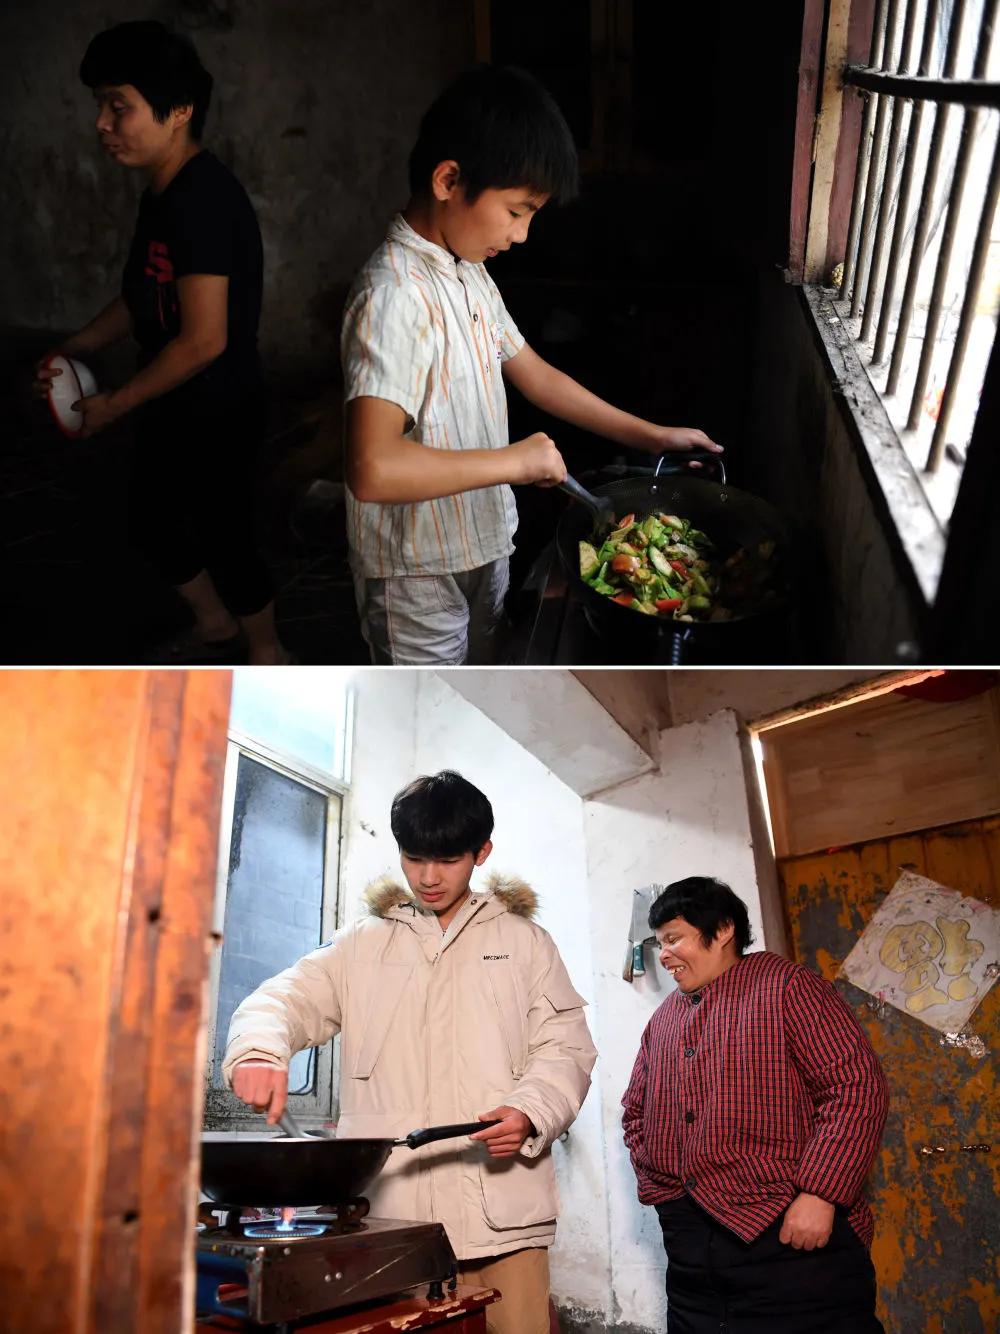 Cheng Jiu và mẹ của anh ấy đang nấu ăn trong nhà bếp của ngôi nhà cũ (ảnh chụp ngày 15 tháng 7 năm 2014); ảnh dưới đây: Cheng Jiu và mẹ anh ấy đang chuẩn bị bữa trưa trong nhà bếp của ngôi nhà cho thuê (ảnh chụp ngày 24 tháng 1). Ảnh của Tân Hoa Xã phóng viên Liu Junxi 